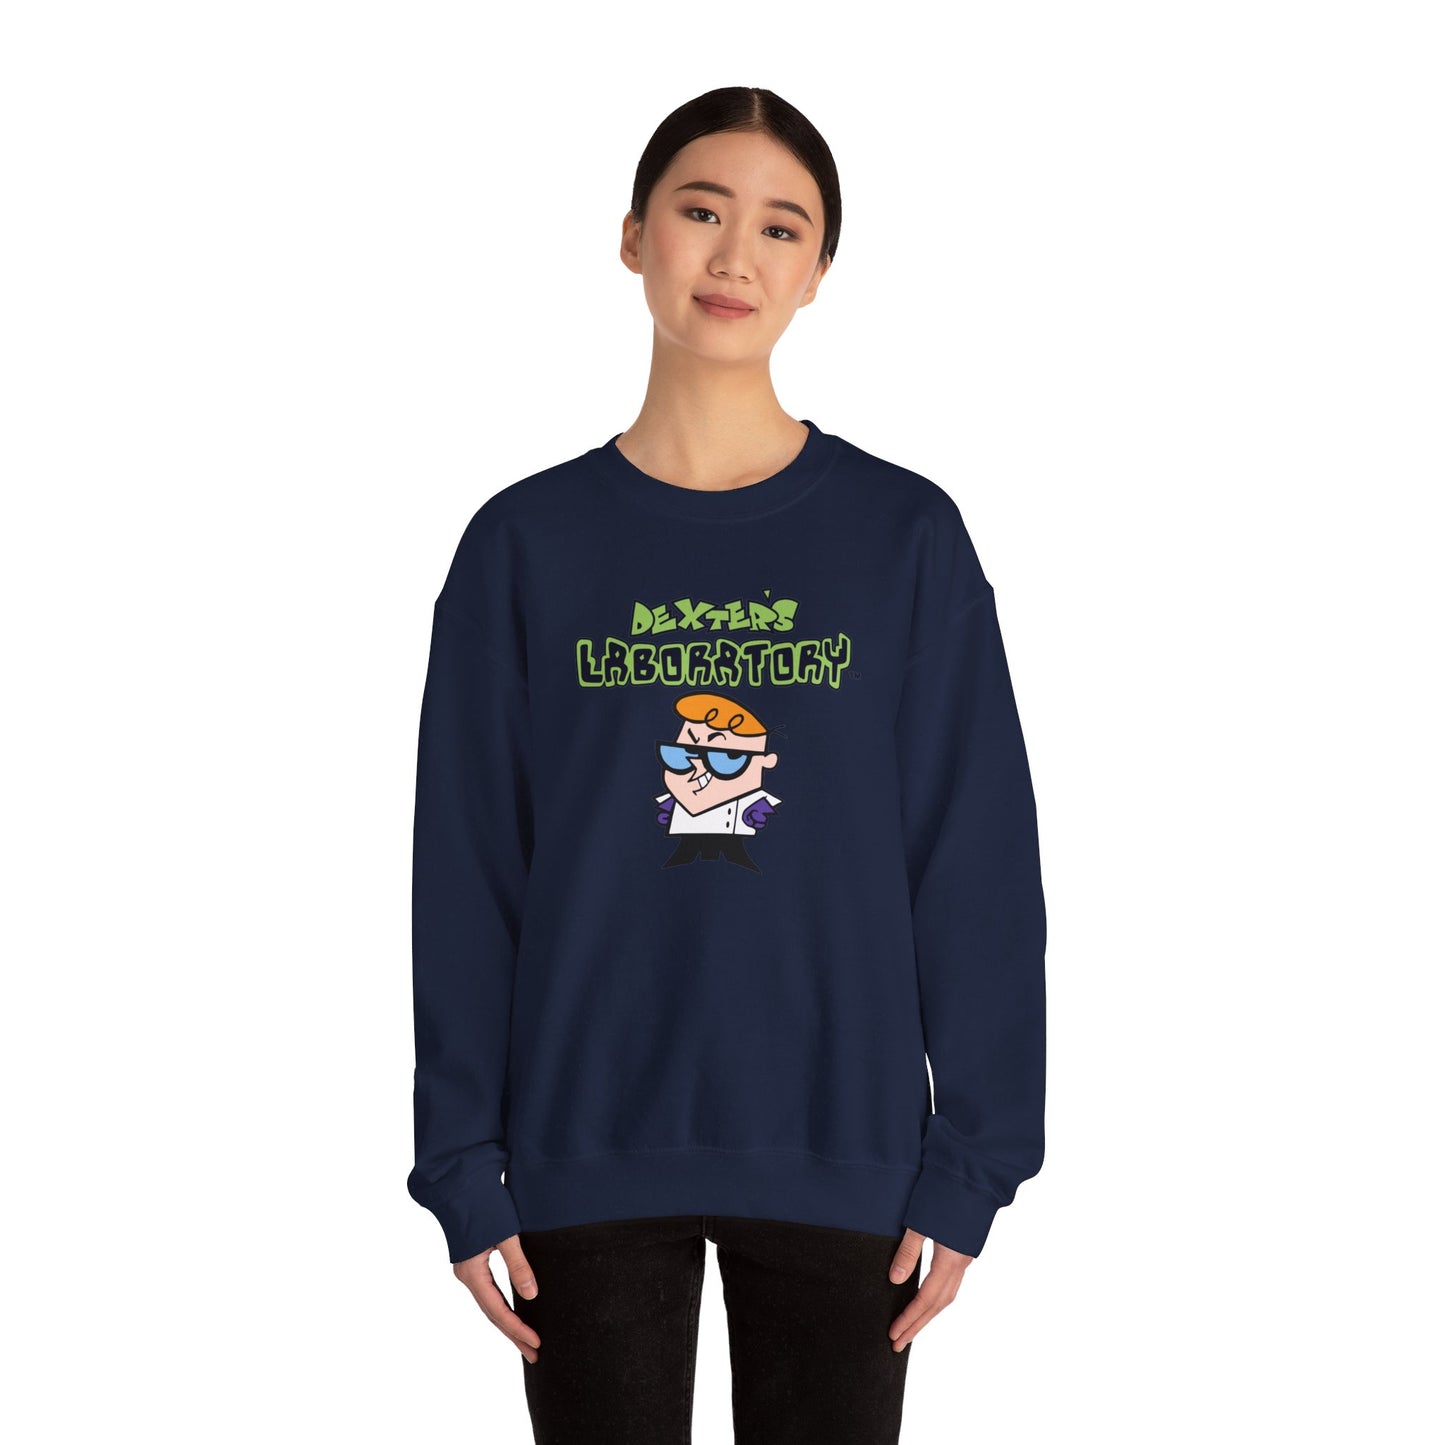 Dexter's Laboratory Sweatshirt